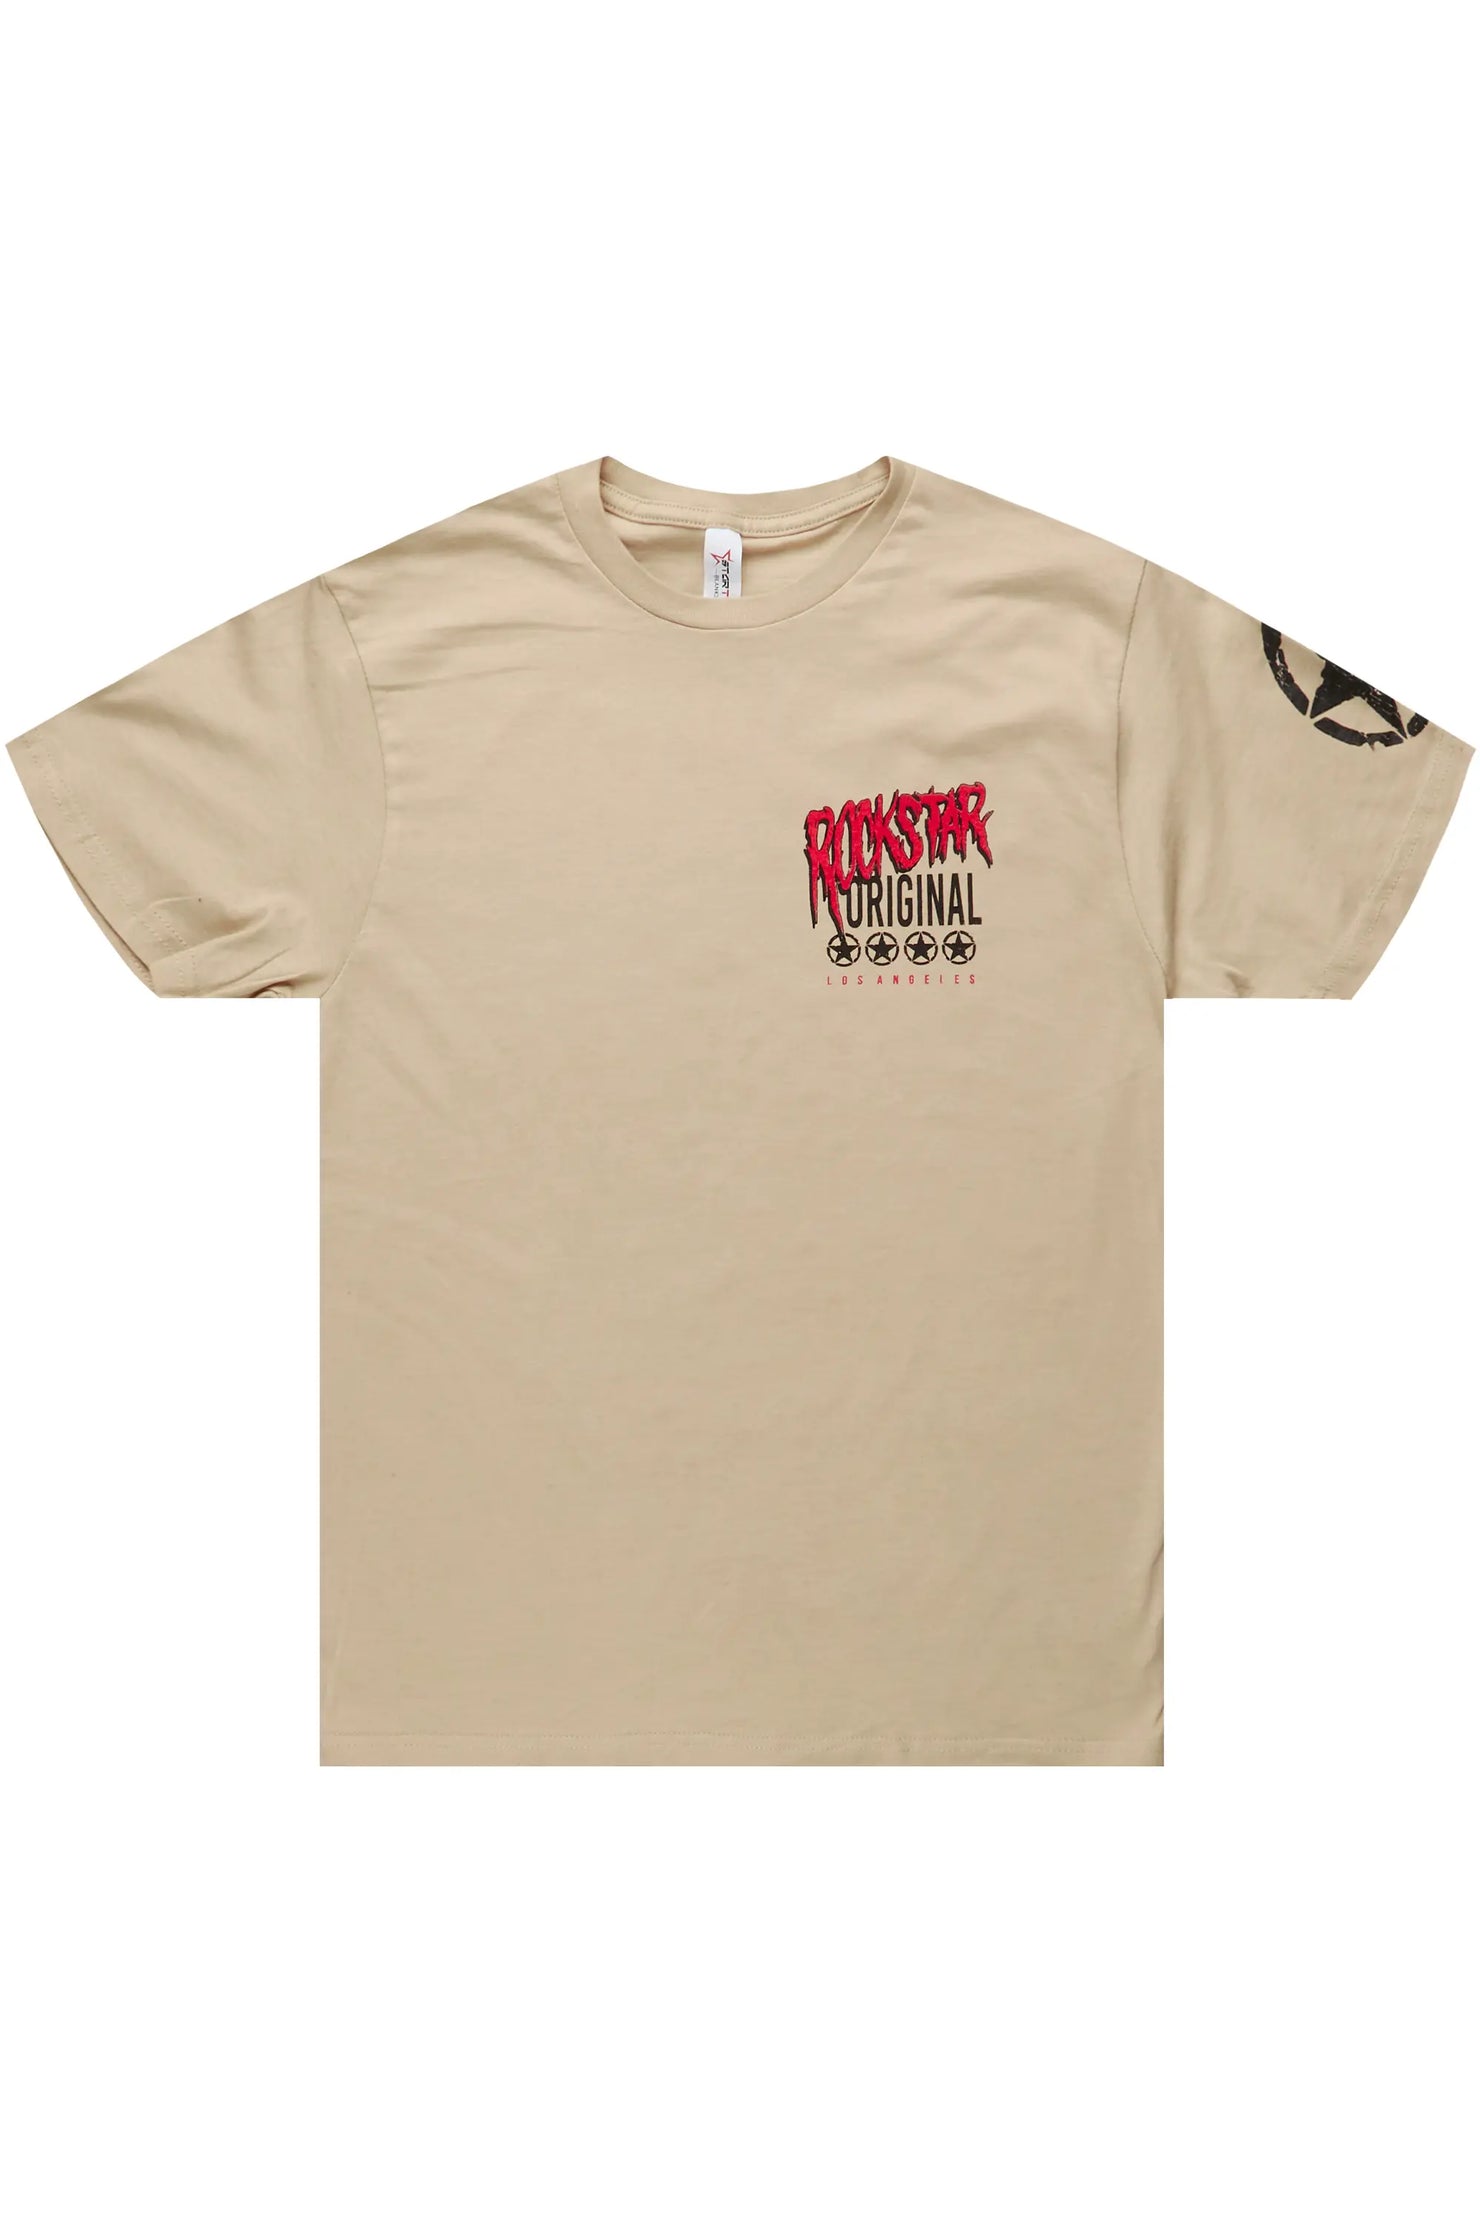 Wizzurd Beige Graphic T-Shirt– Rockstar Original